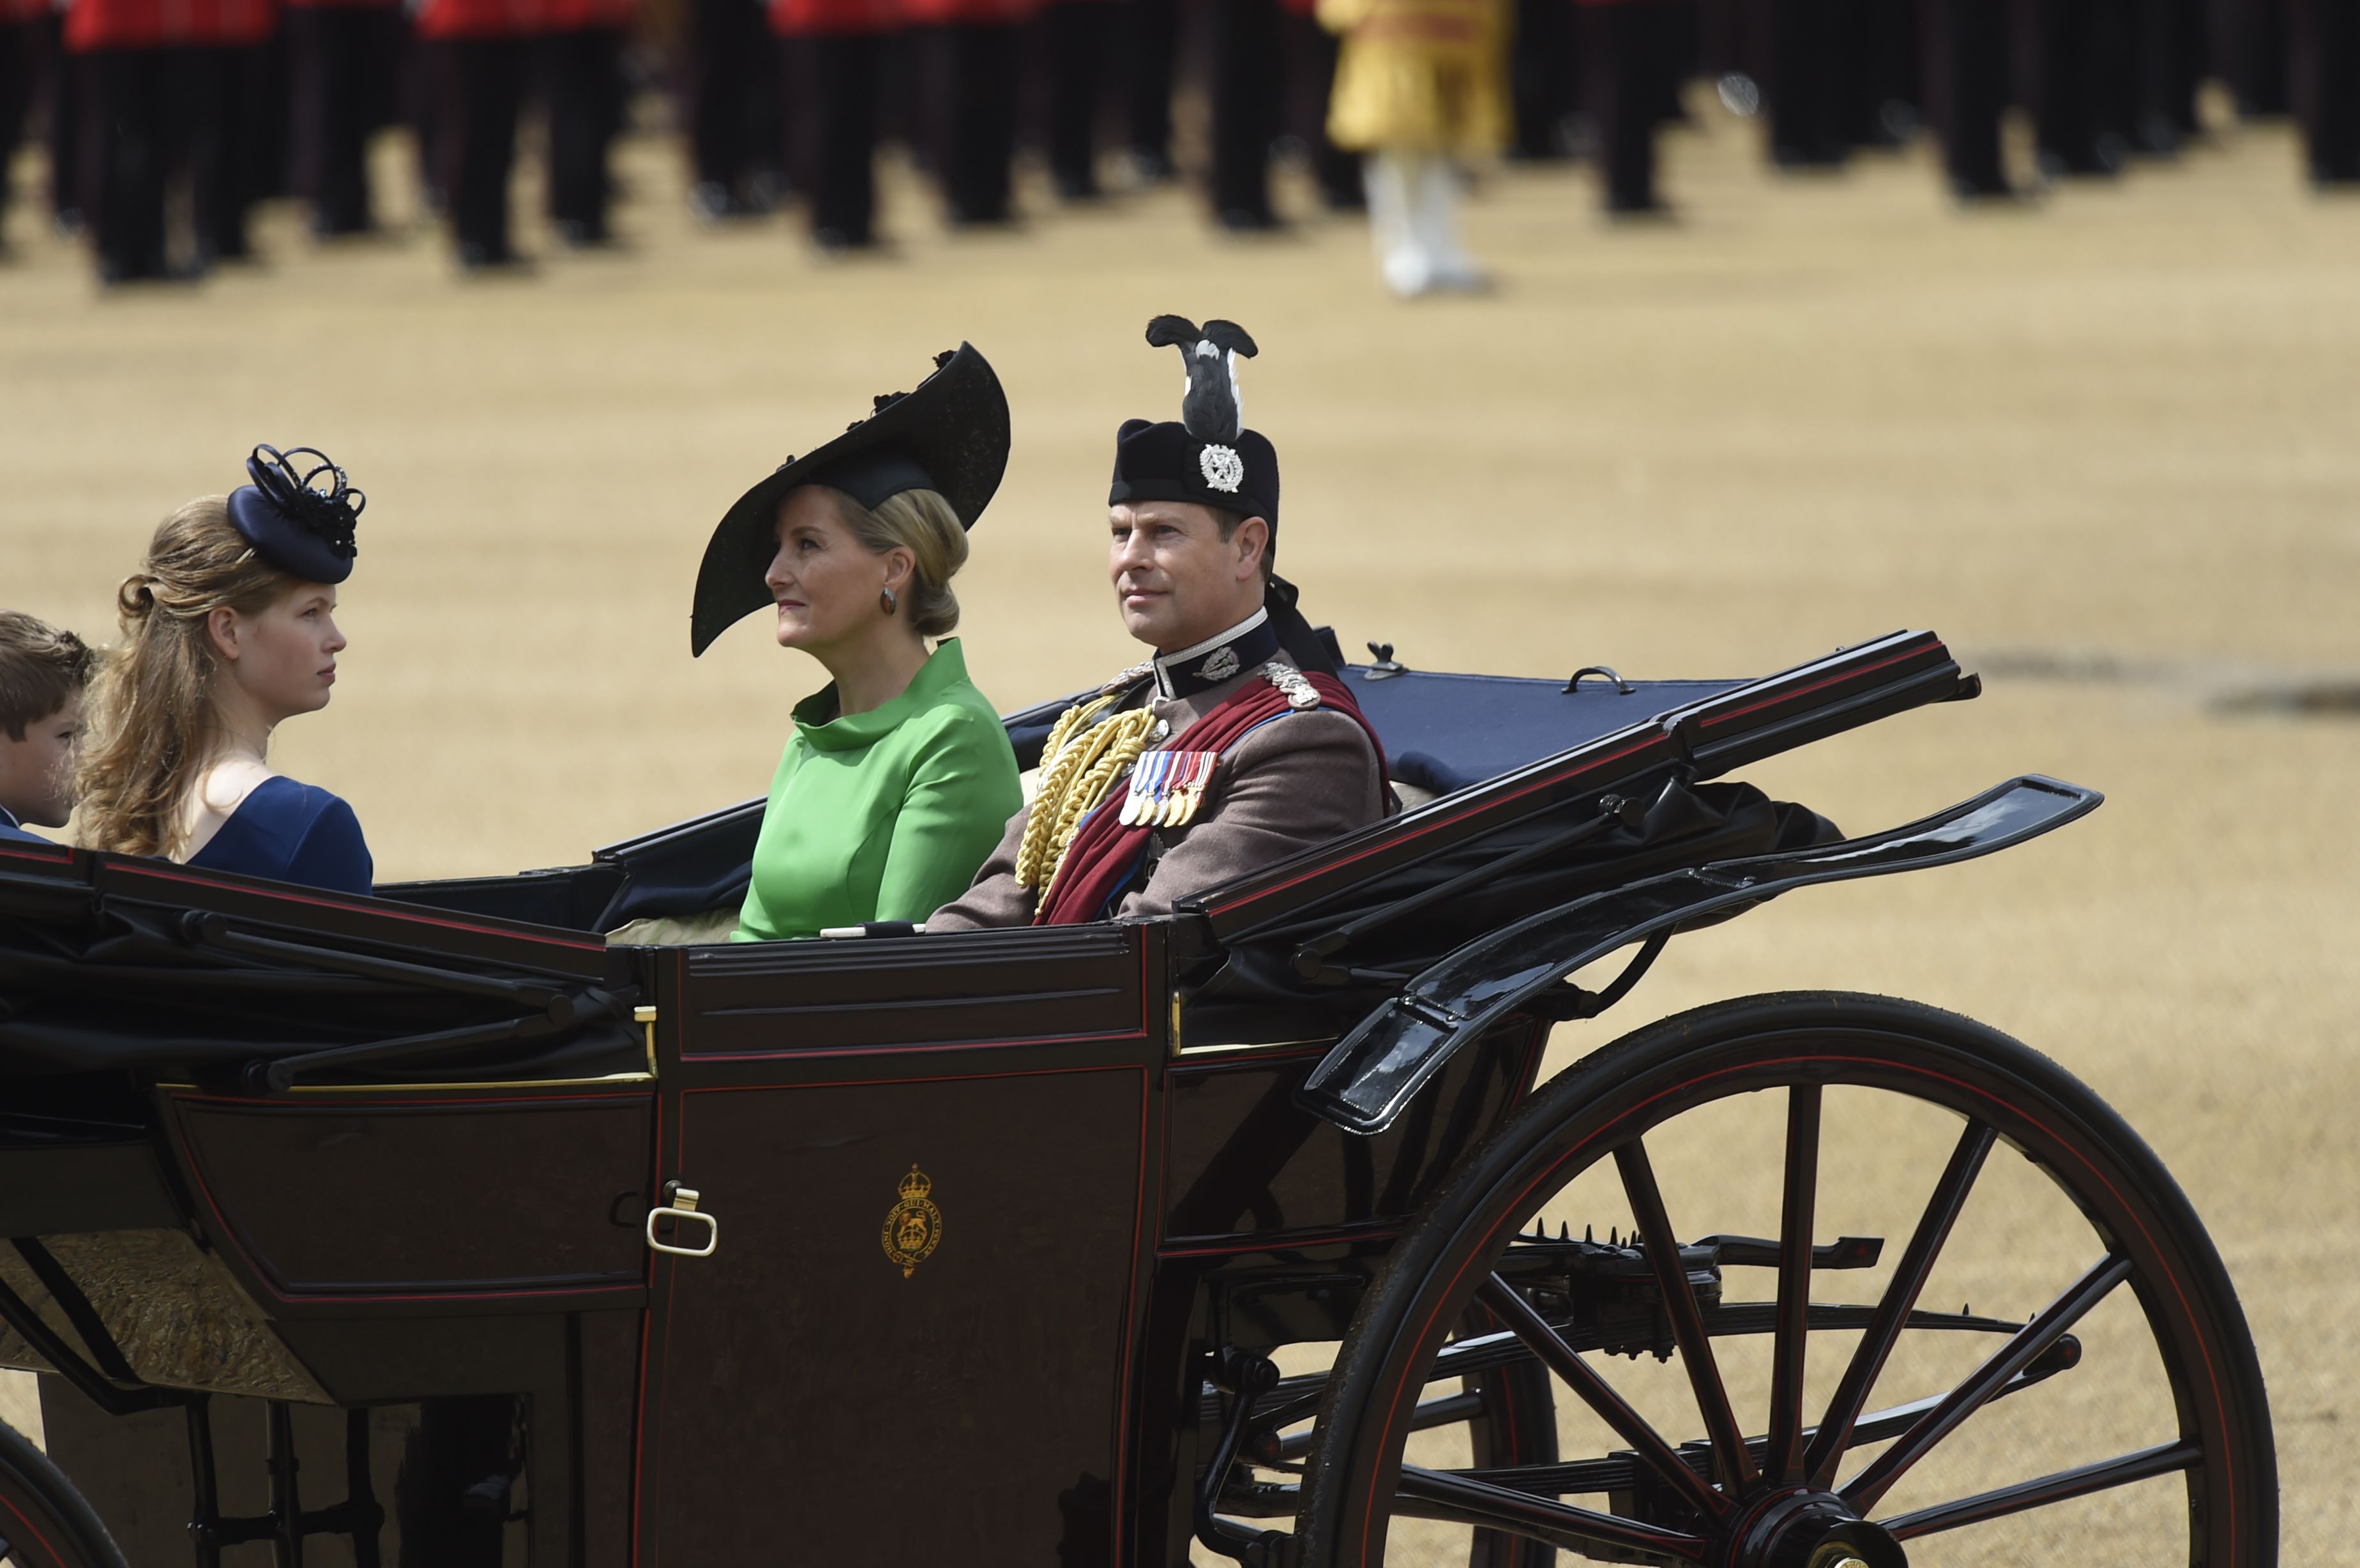 Кейт Миддлтон, принц Гарри, Меган Маркл и другие на параде Trooping the Colour в честь Елизаветы II